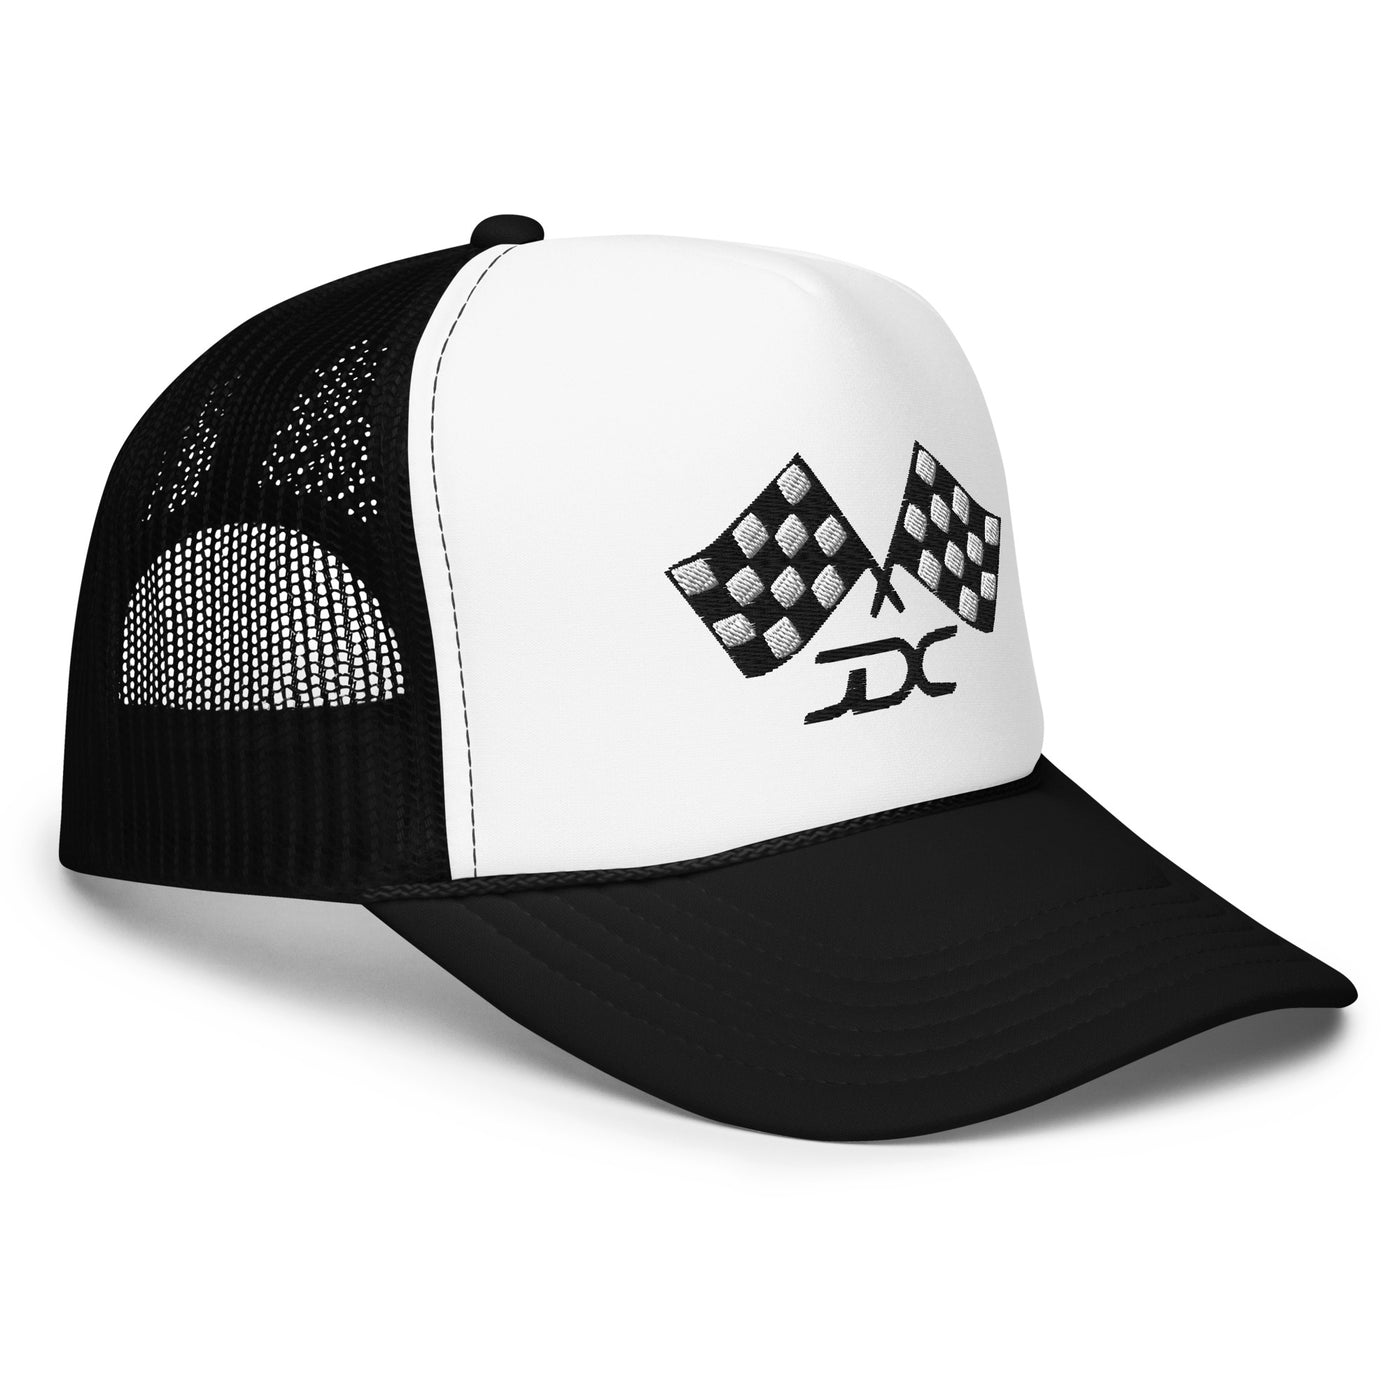 Race Fans Foam Trucker Hat